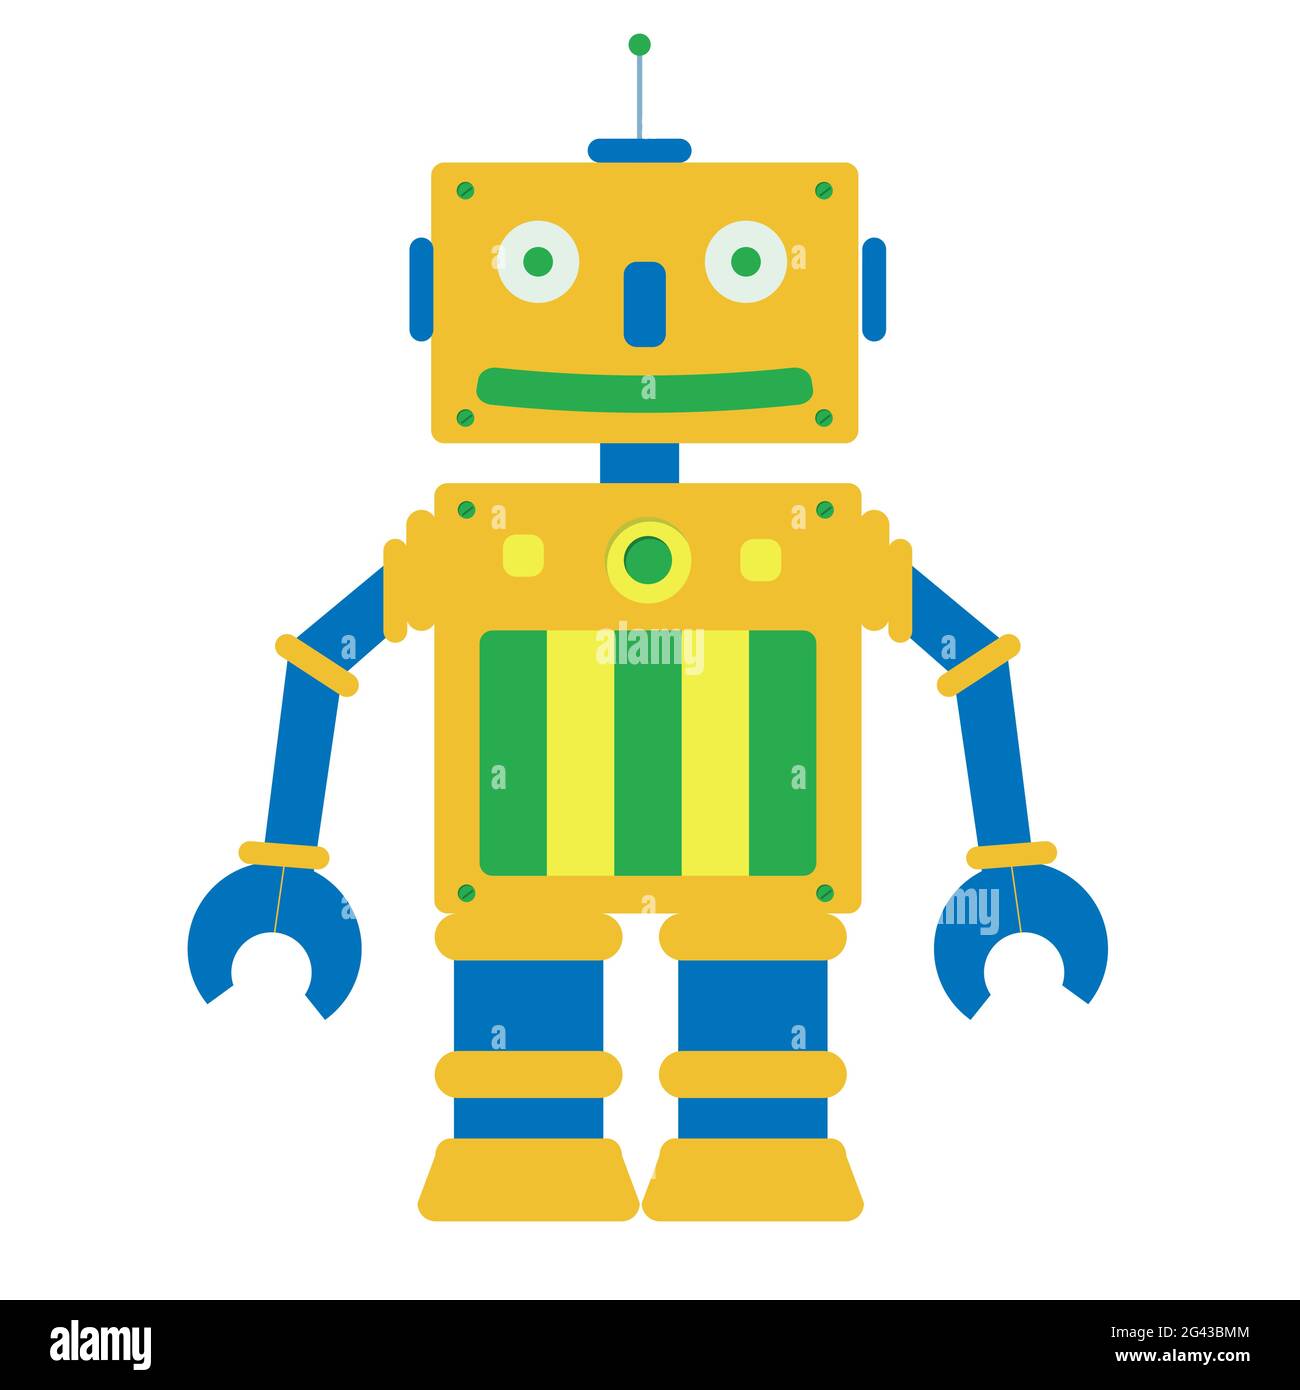 Dessin animé jouet robot sur fond blanc Image Vectorielle Stock - Alamy